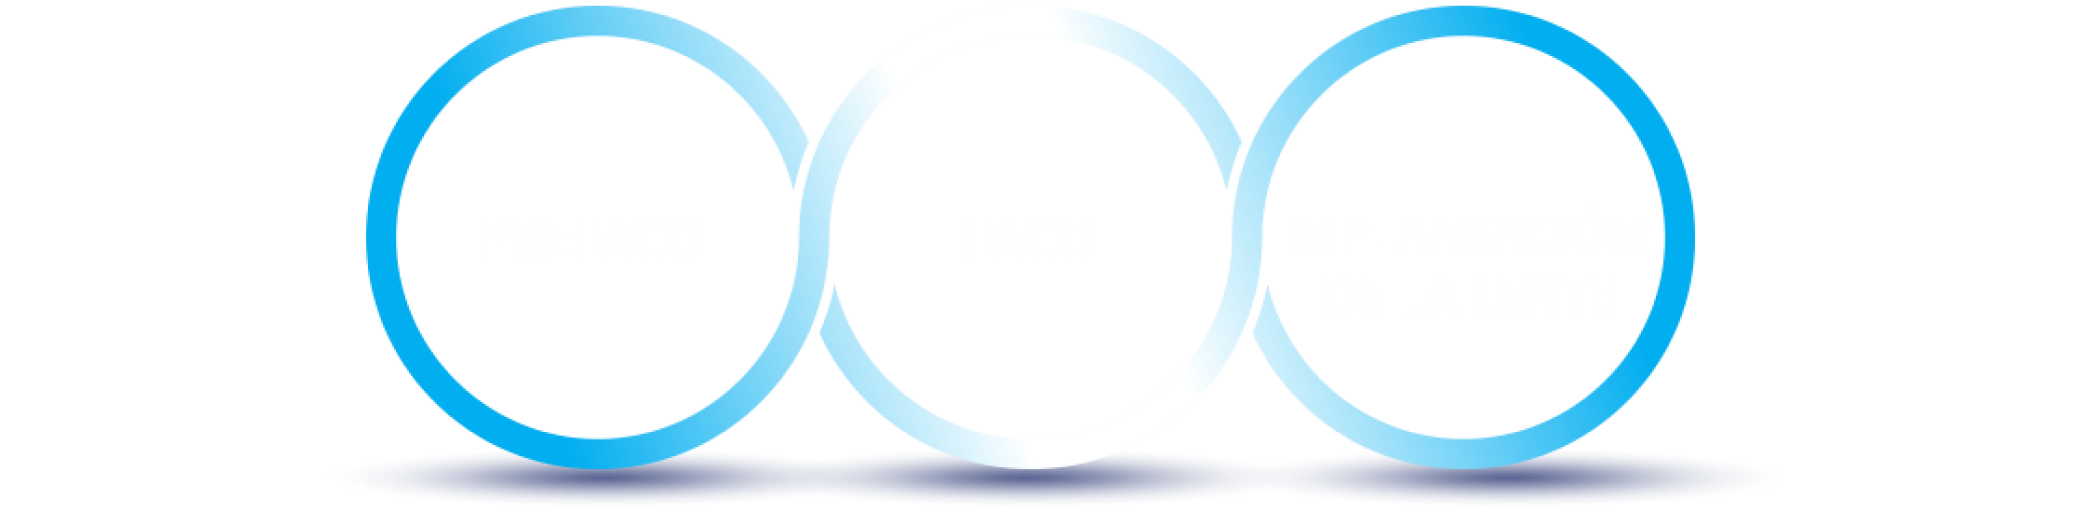 3 círculos azules interconectados. Dentro del primero, el texto dice “Pre Faco.” Dentro del círculo del medio, el texto dice “Faco.” Dentro del último círculo, el texto dice “Inyección de LIO.”